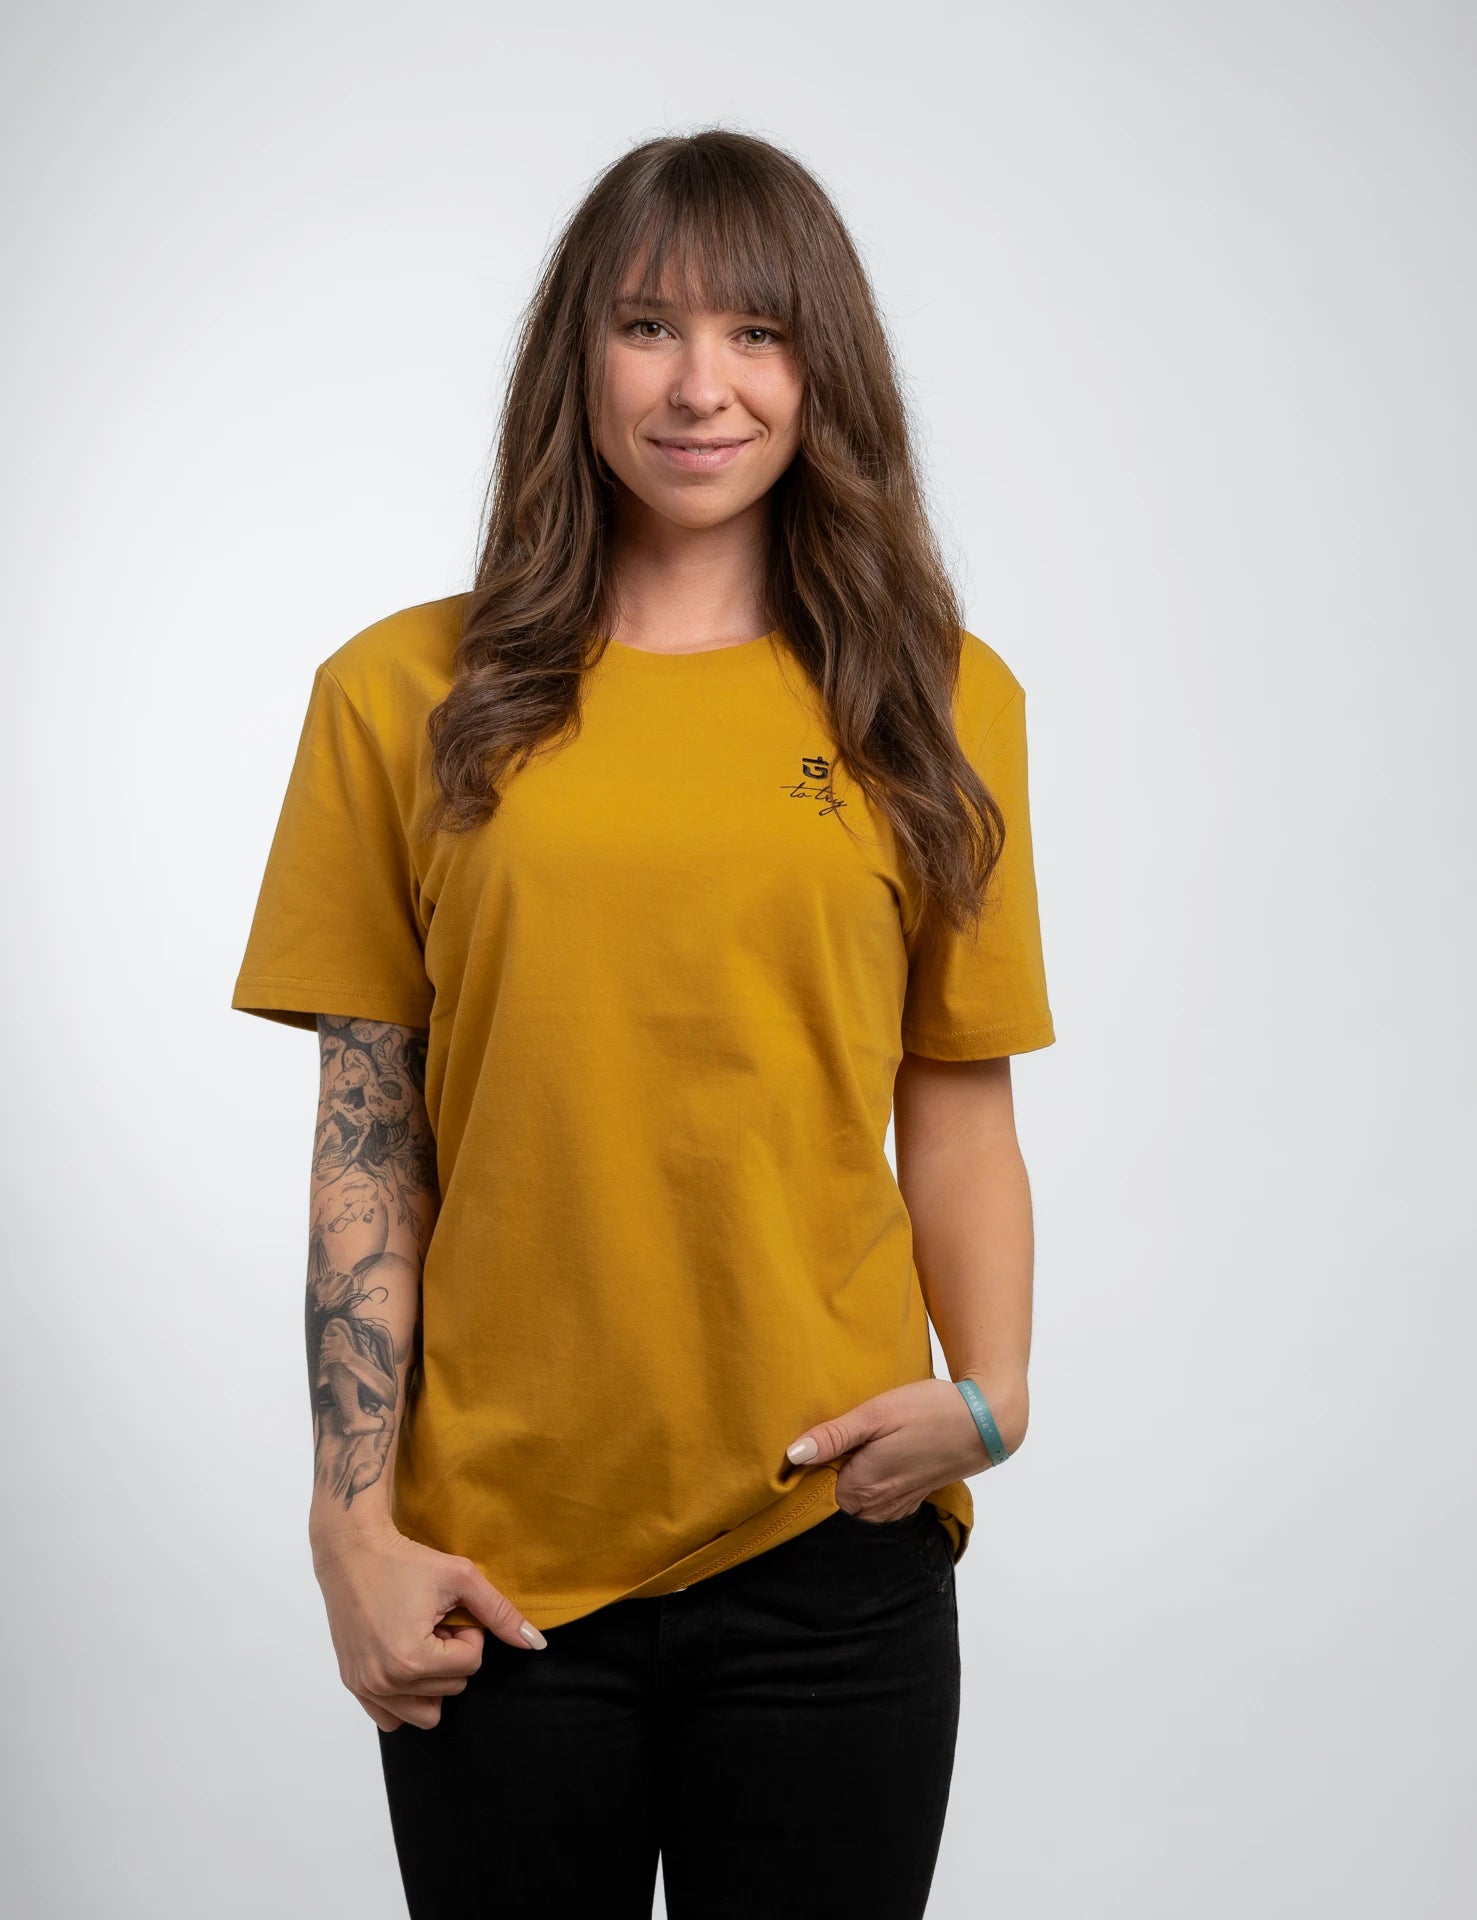 classic Bio-Baumwolle T-Shirt in amber mit schwarzem, 1D totry Stick links auf der Brust.